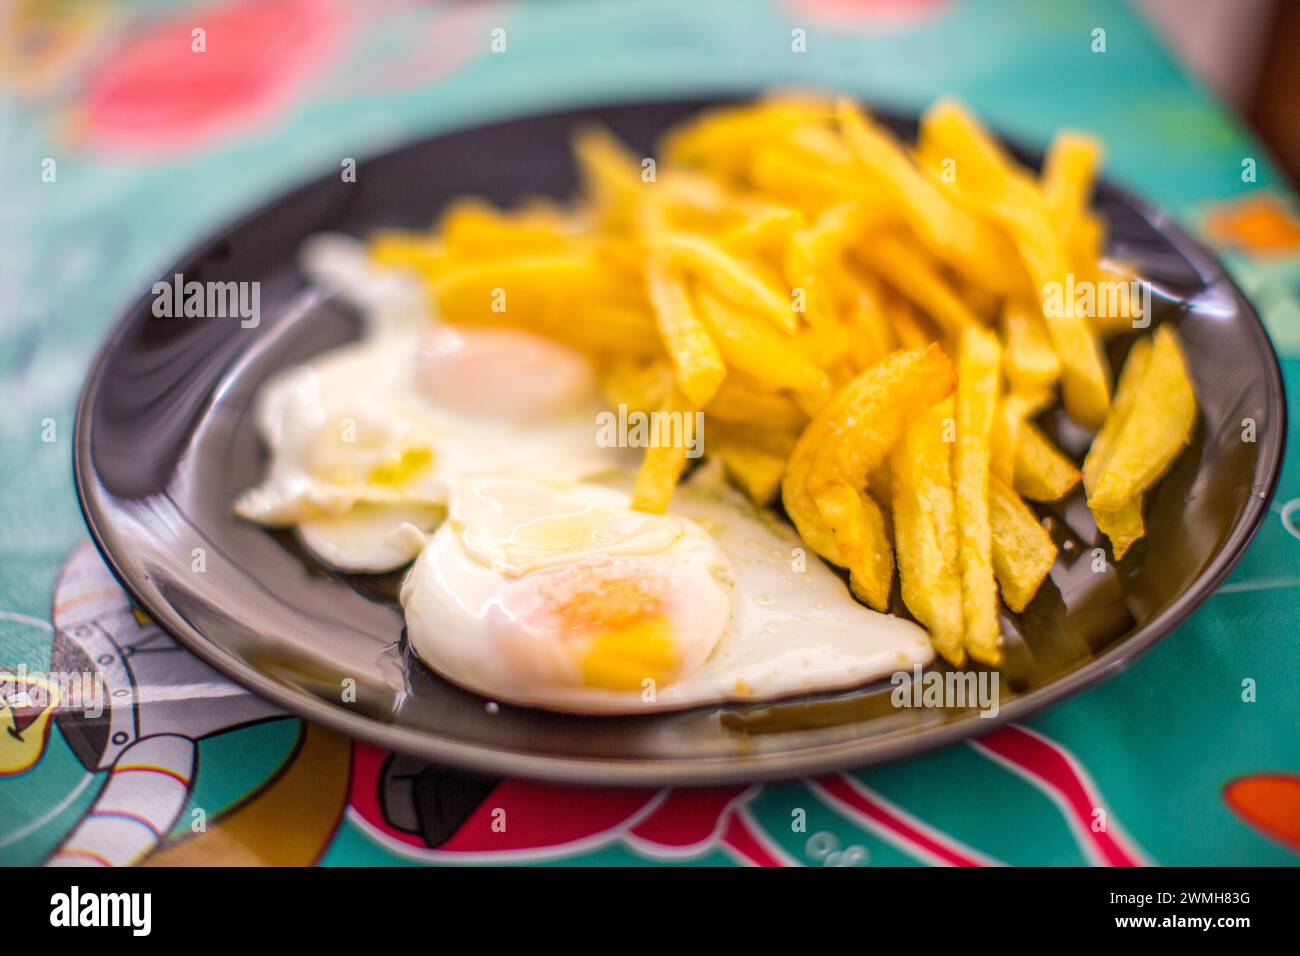 Ein Teller mit knusprigen Pommes frites, gepaart mit sonnigen Eiern aus Freilandhaltung. Stockfoto